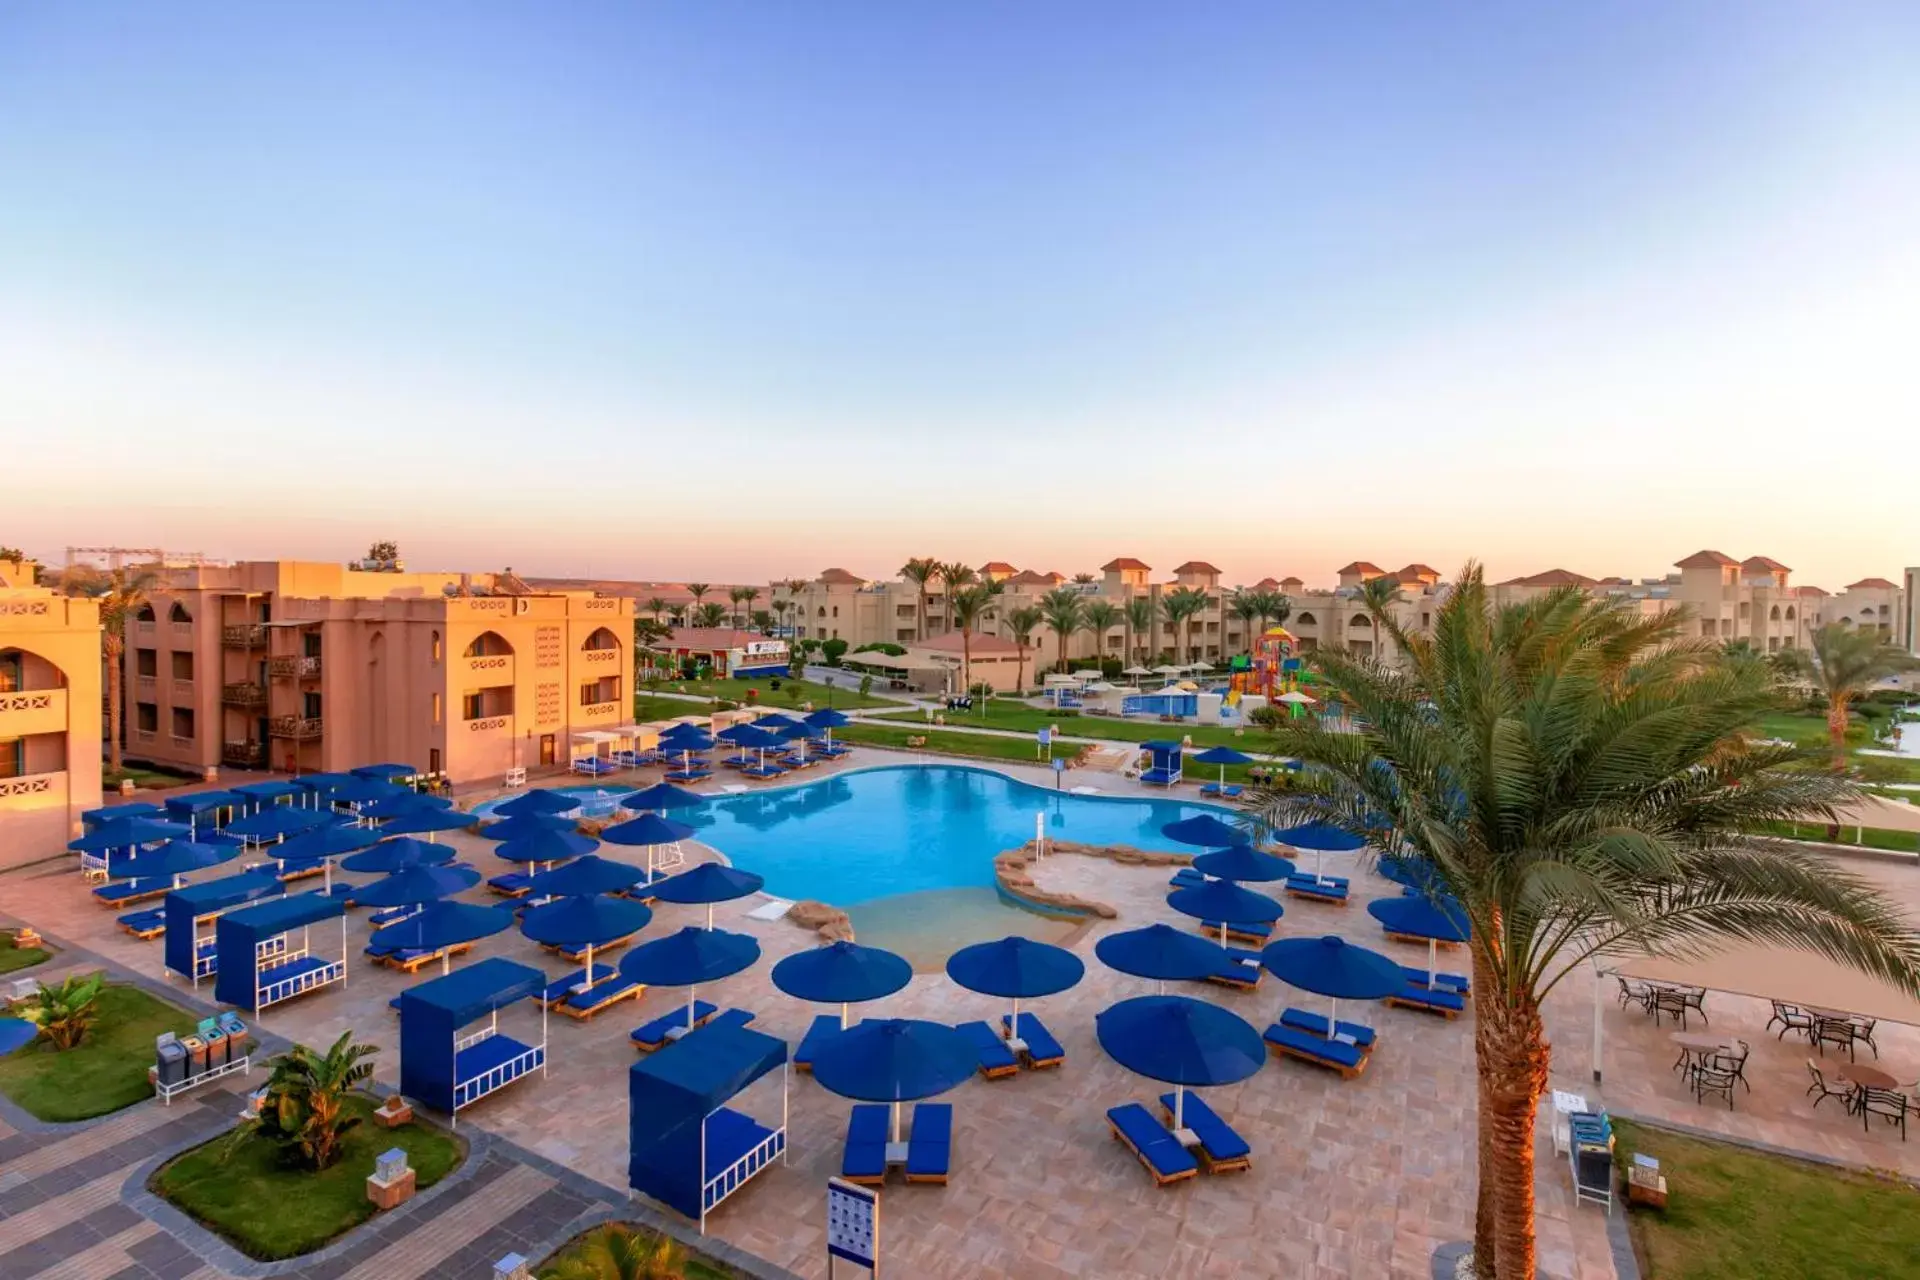 Swimming pool, Pool View in Pickalbatros Aqua Park Resort - Hurghada